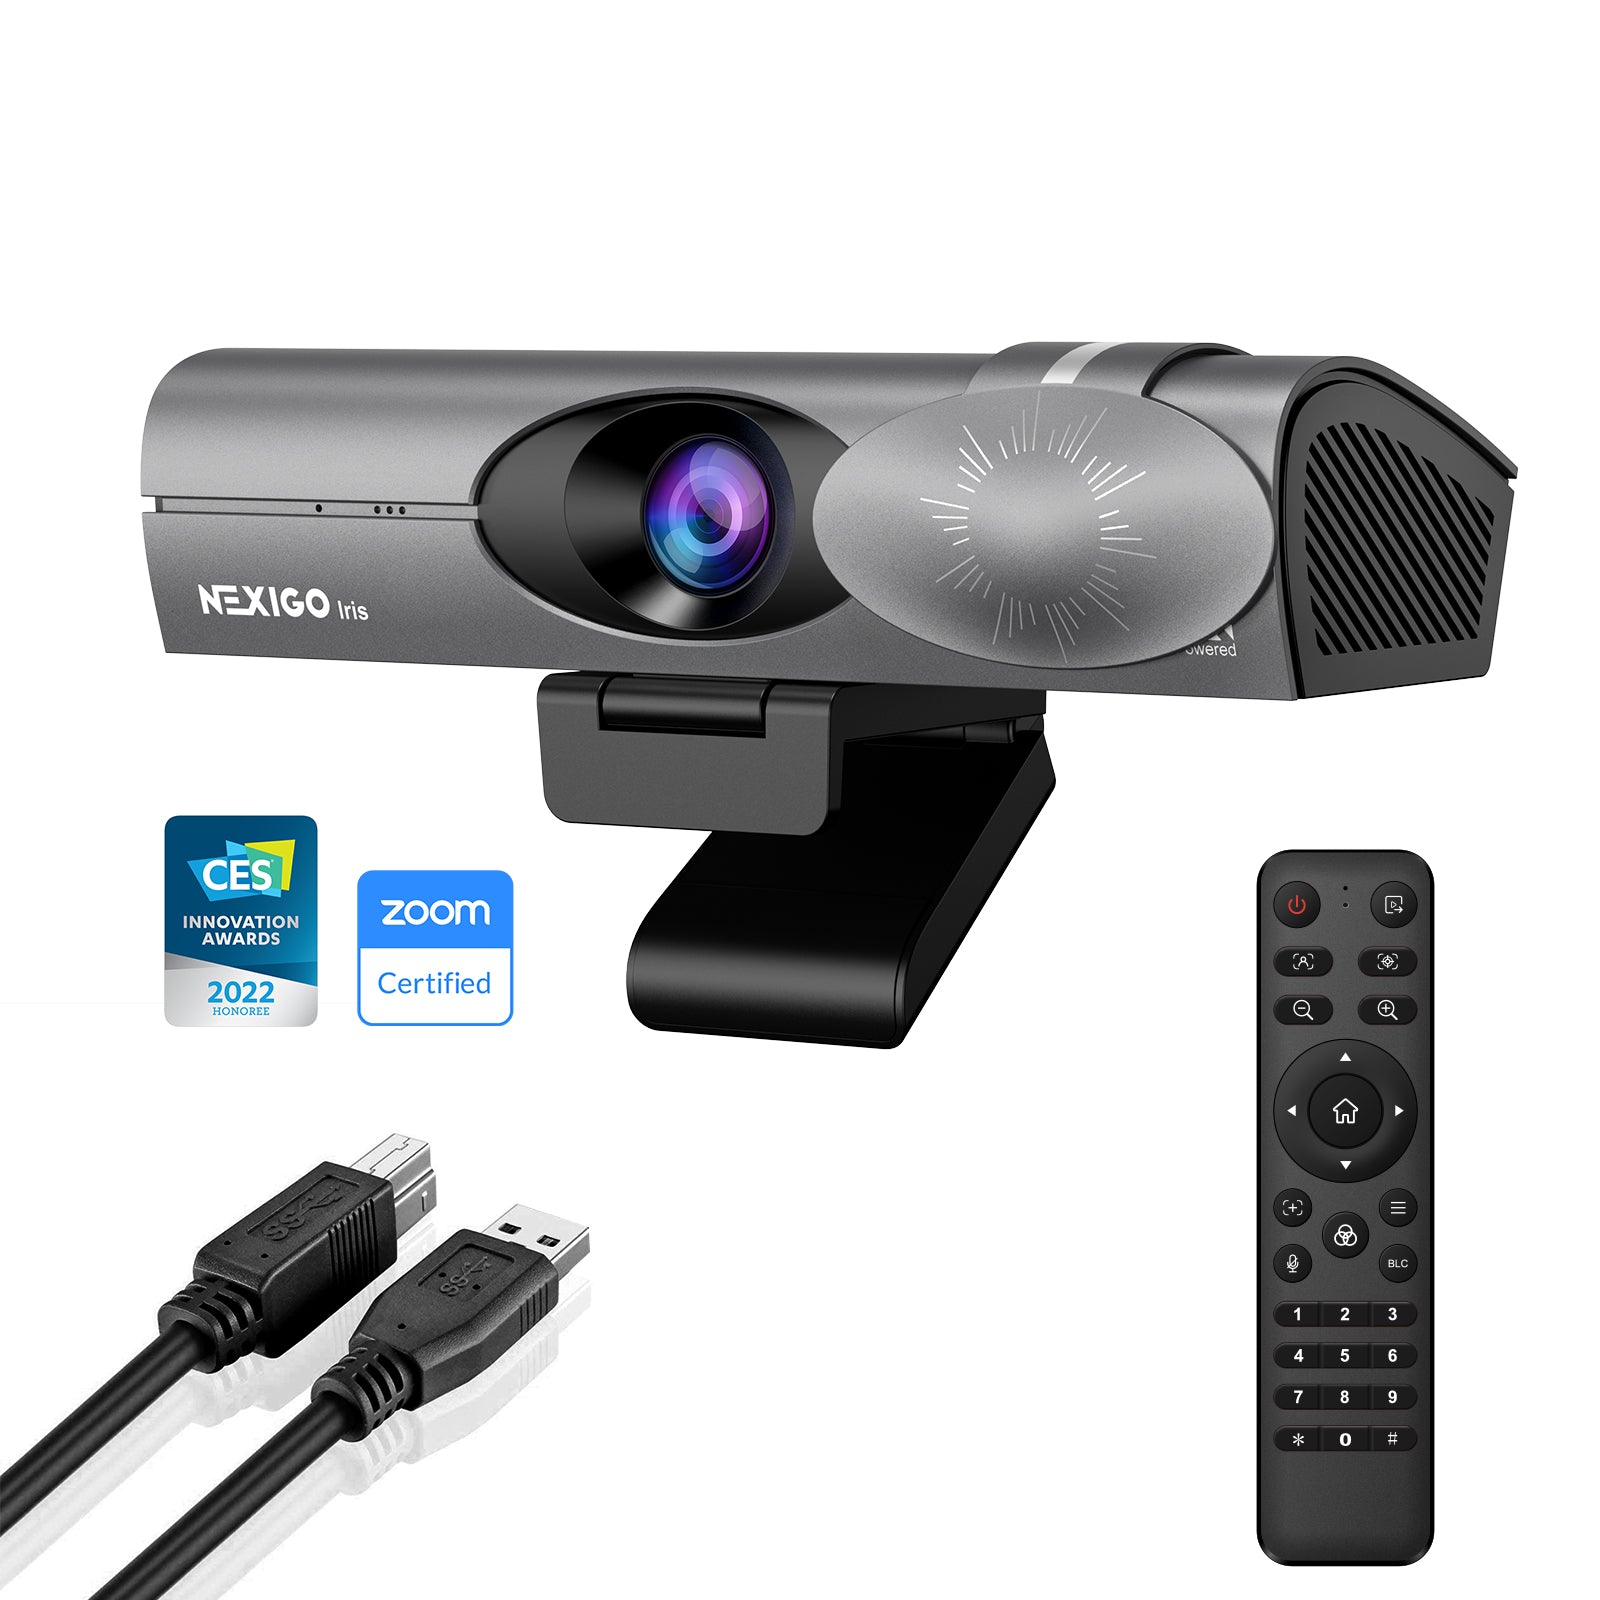 NexiGo Iris, 4K AI Webcam with Remote control and Type-A to Type-C Cable